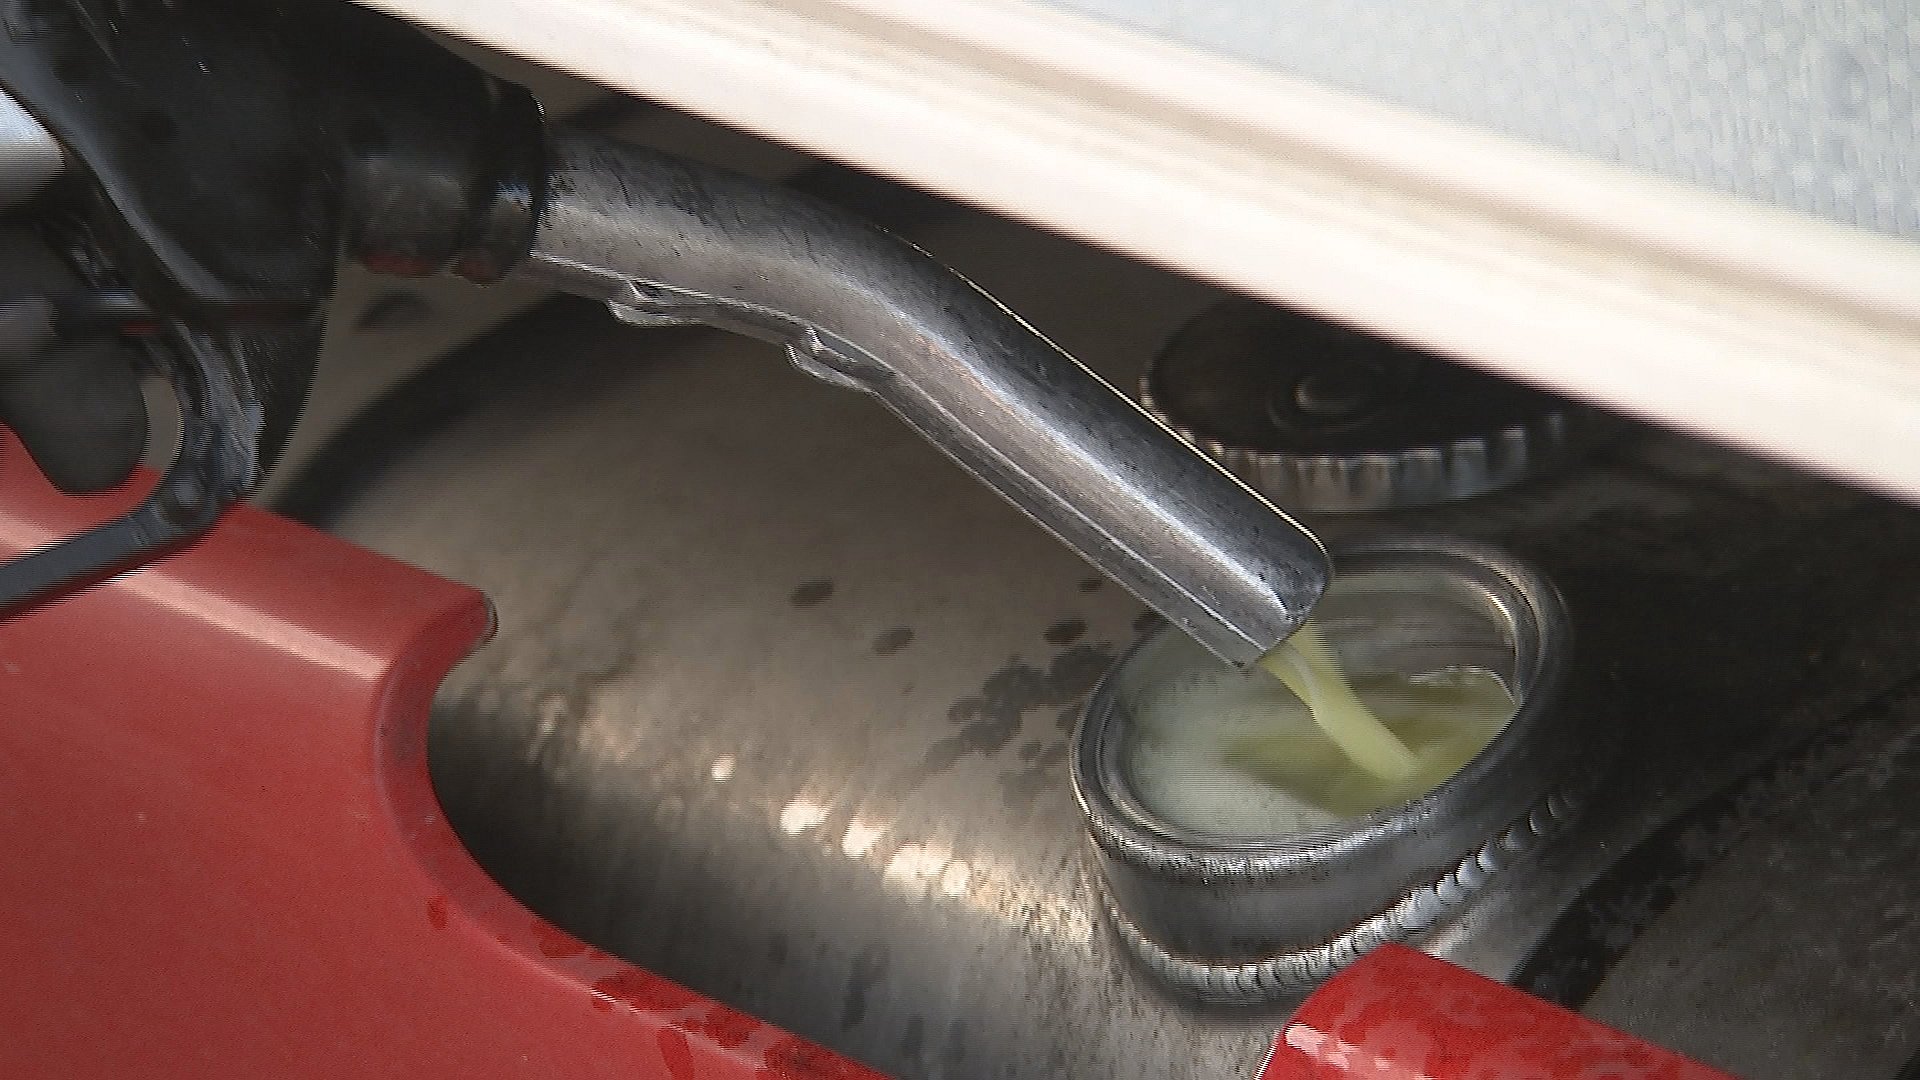 Bukser græs nogle få Eksperter bakker vognmænd op i strid om skat på biogas | TV SYD